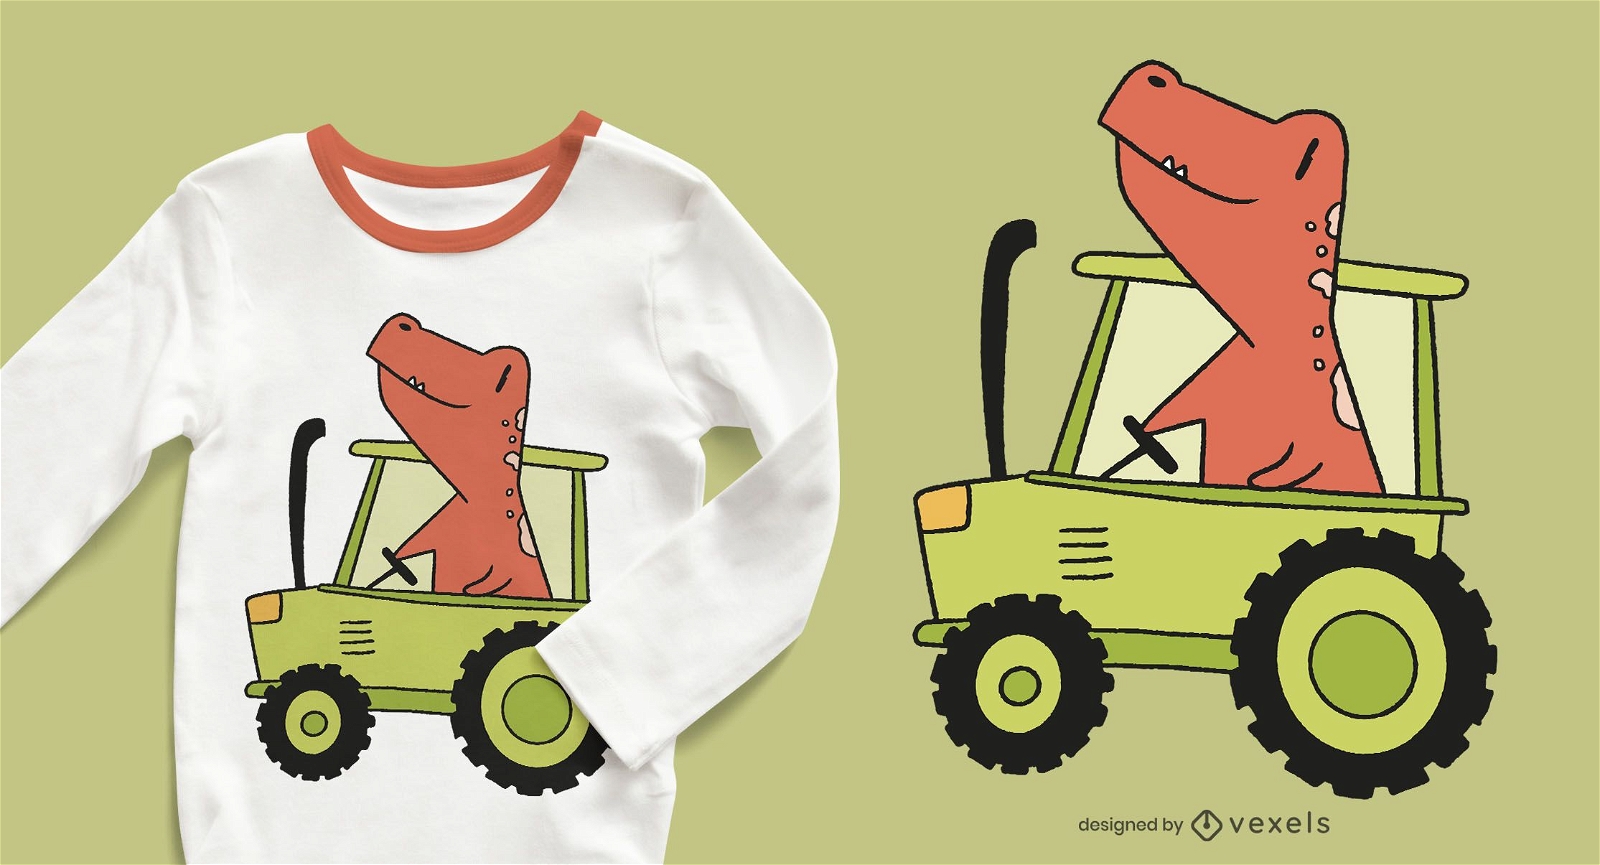 dise?o de camiseta de dinosaurio tractor